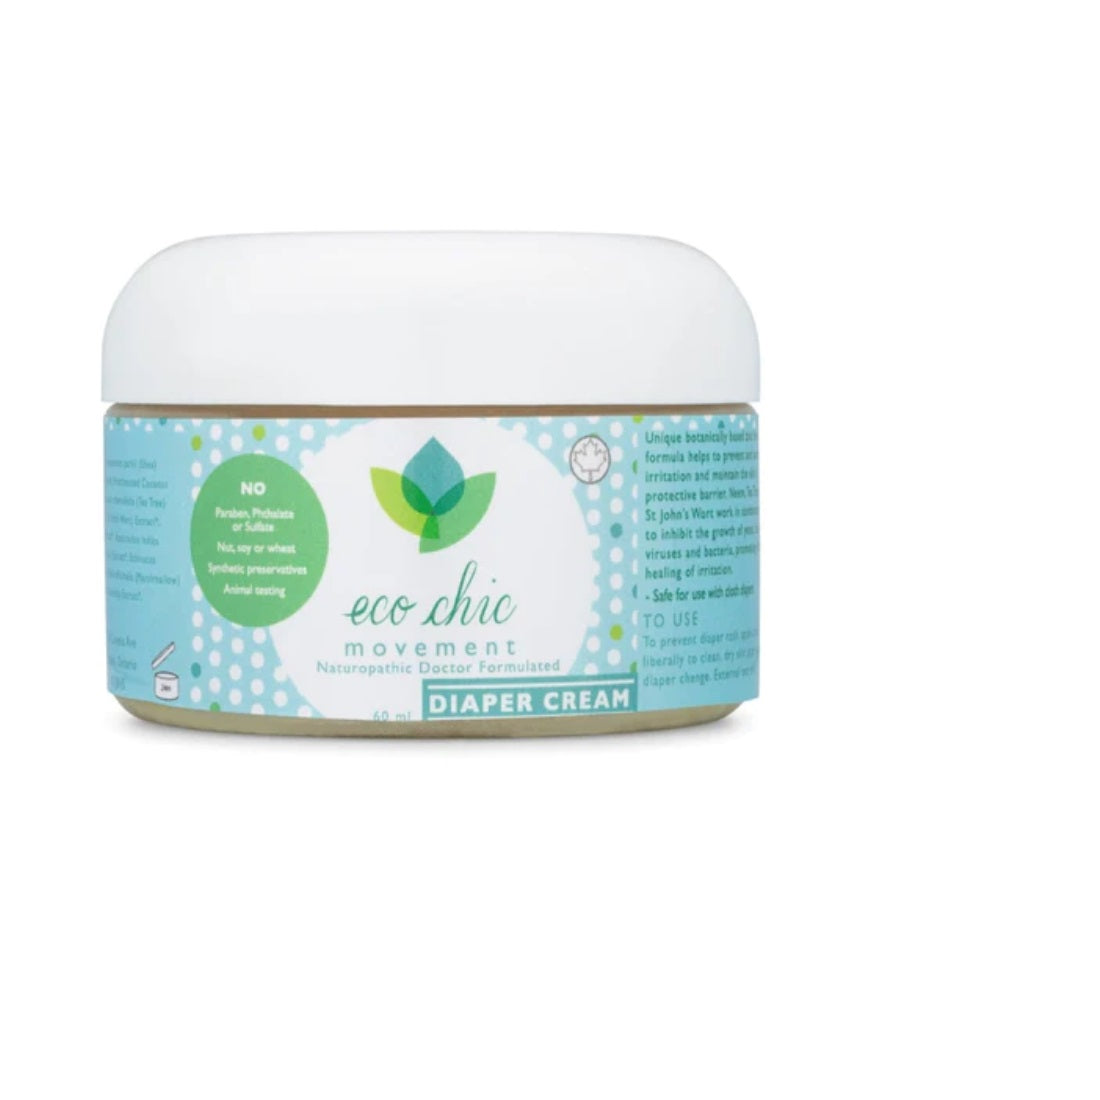 Eco Chic Movement - Diaper Cream